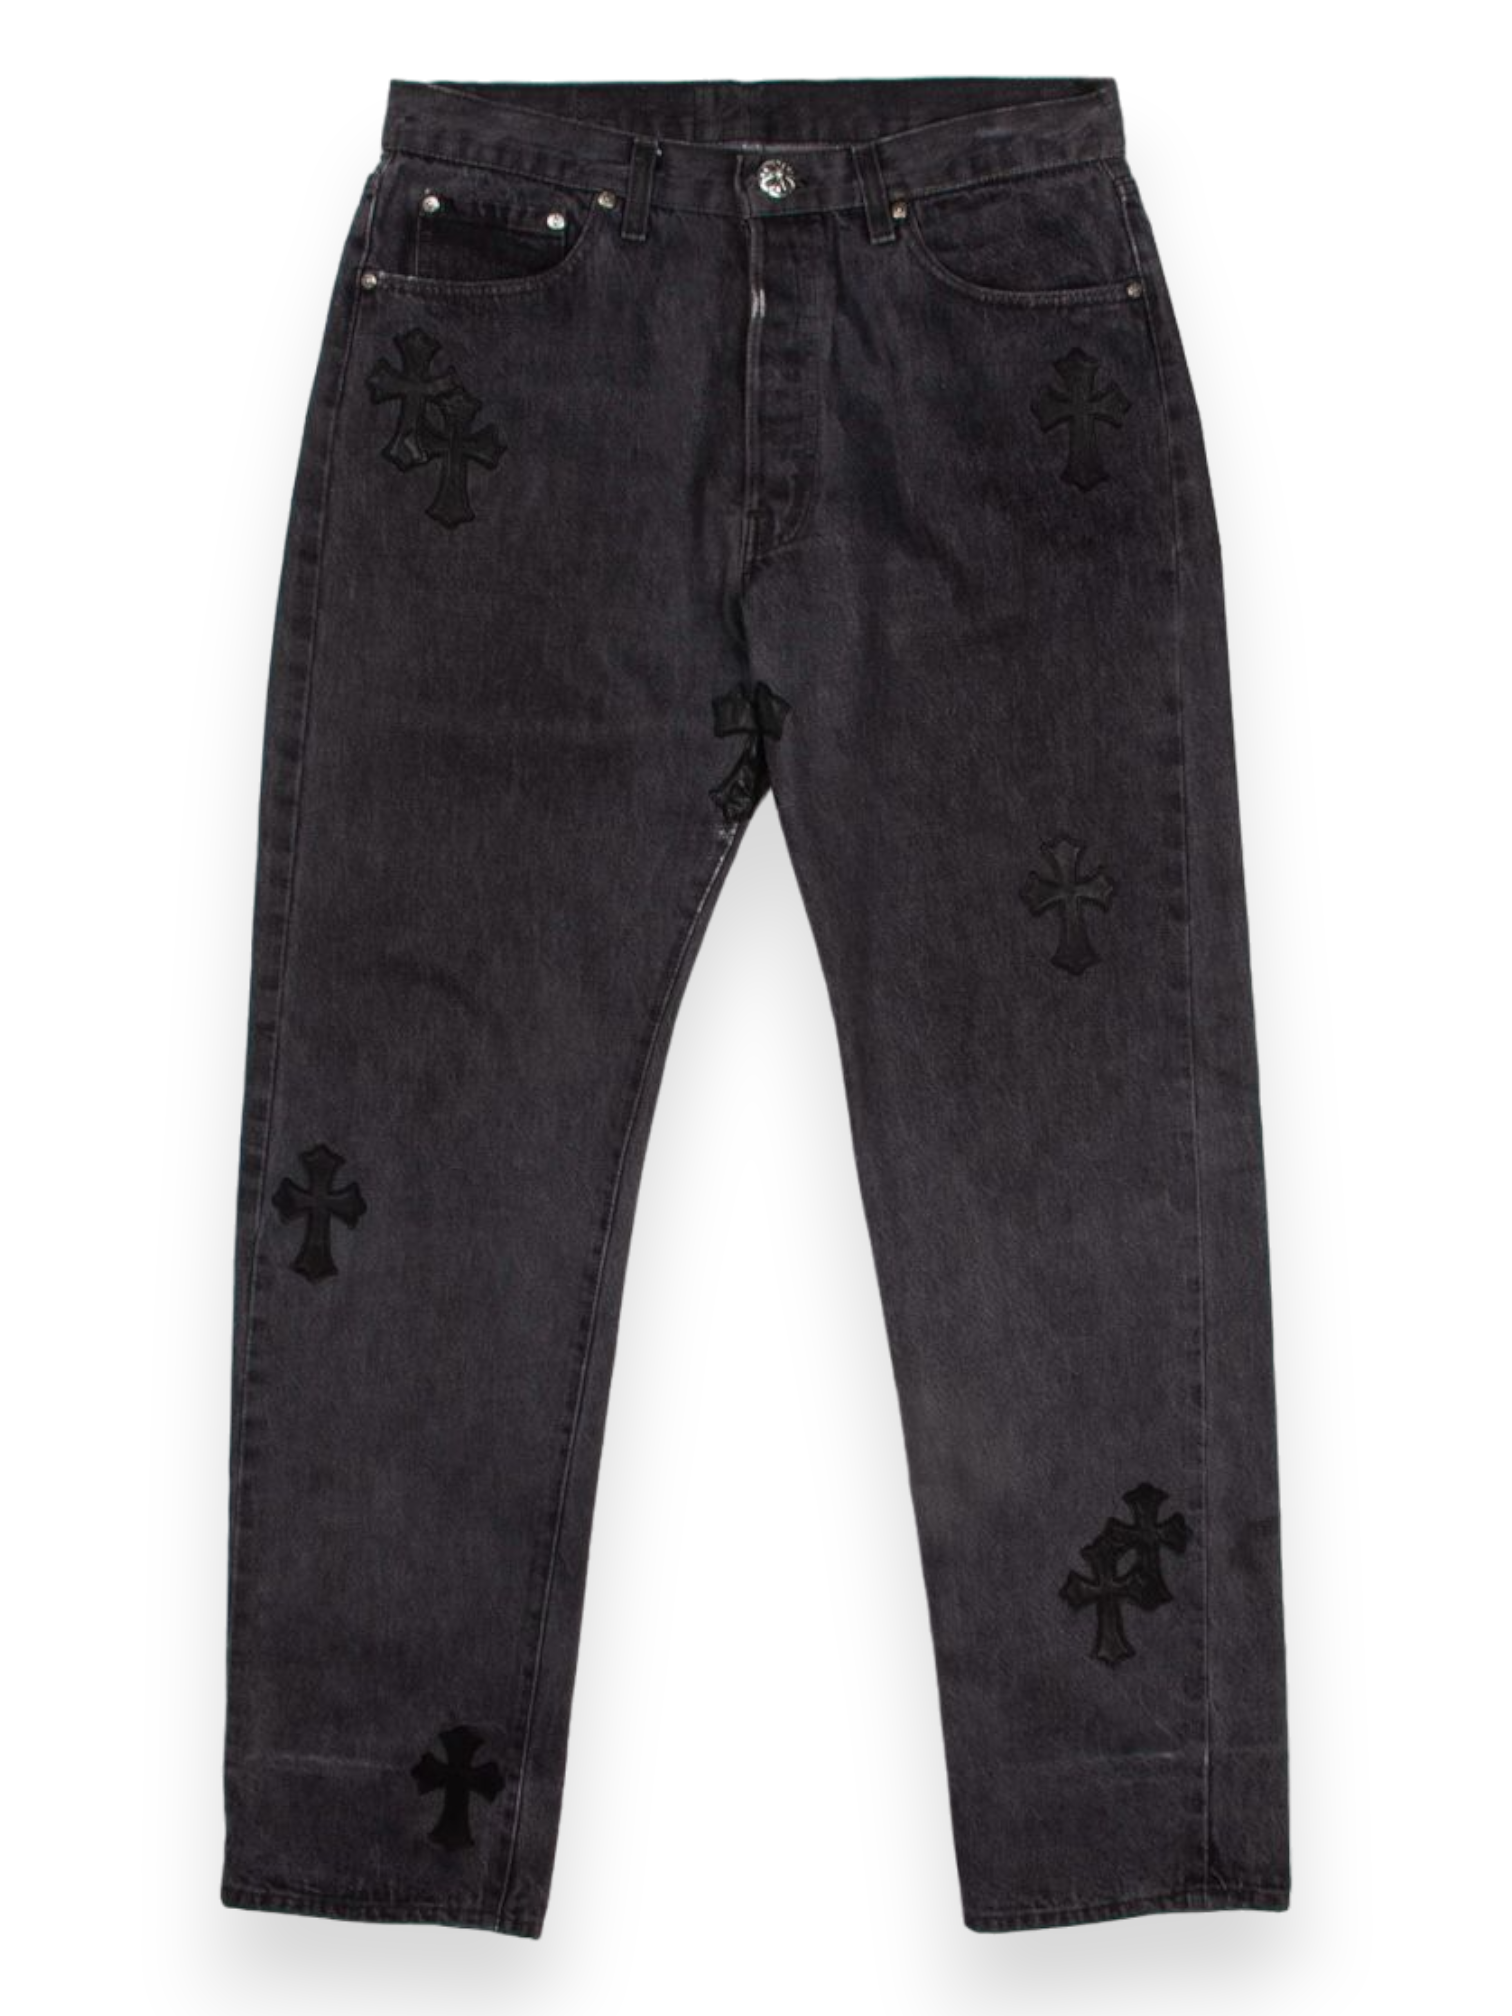 Chrome Hearts Black Cross Patch Black Levi’s Denim Jeans